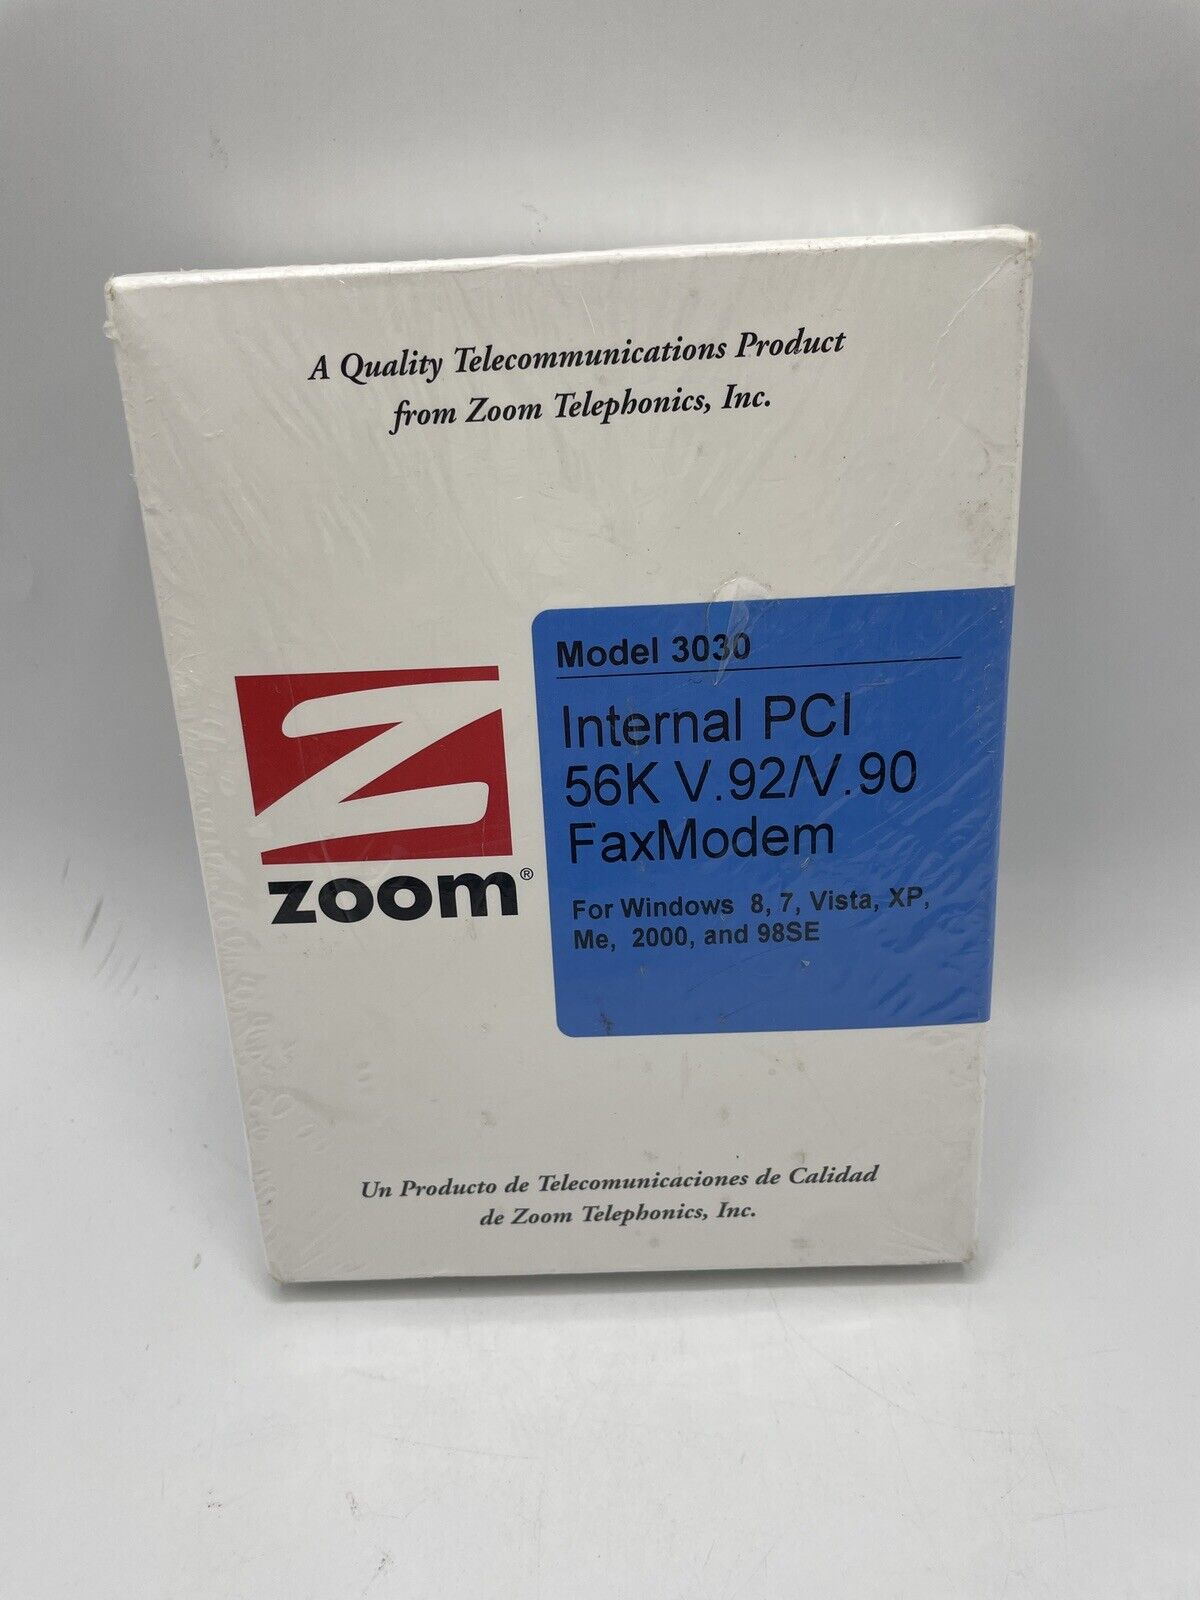 Zoom Model 3030 Internal PCI 56K V.92/V.90 FaxModem